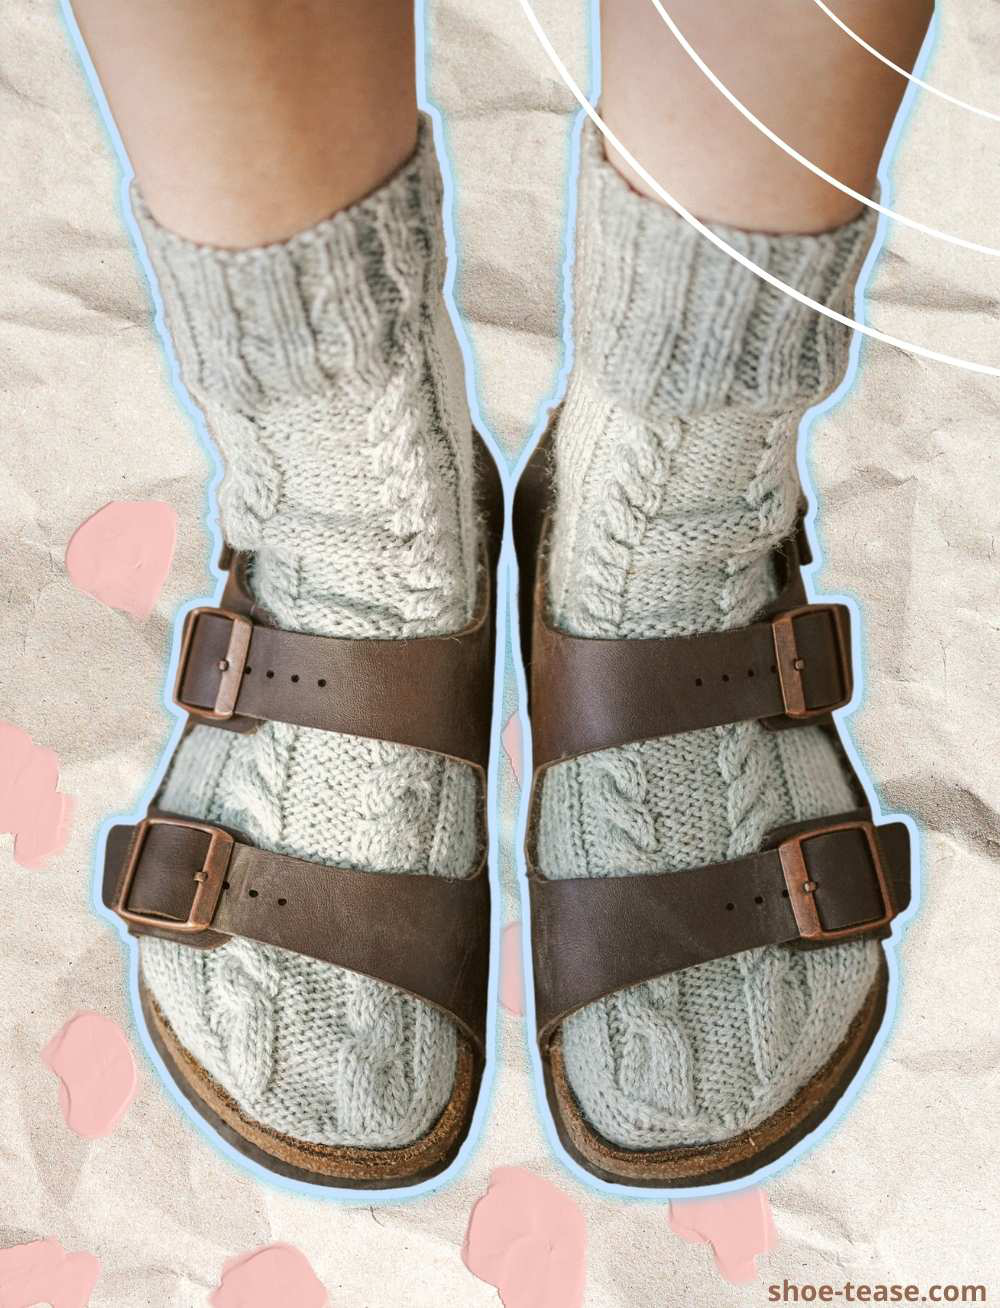 Wearing Birkenstocks with Socks: A Style Guide for Women